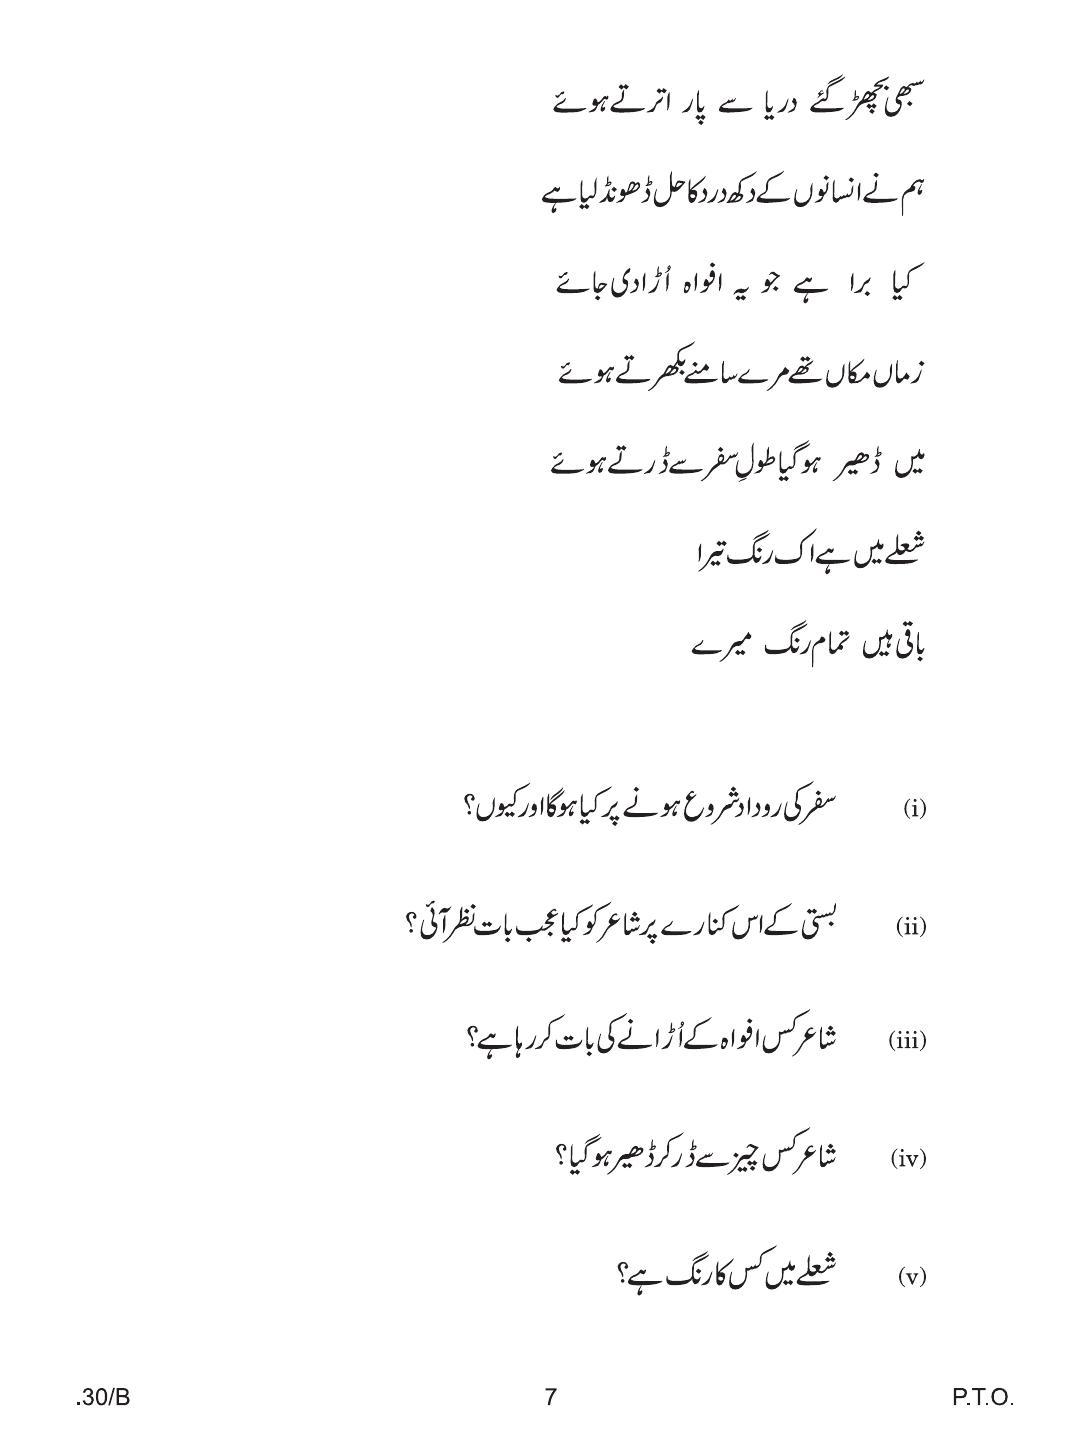 CBSE Class 12 Urdu Elective 2020 Compartment Question Paper - Page 7